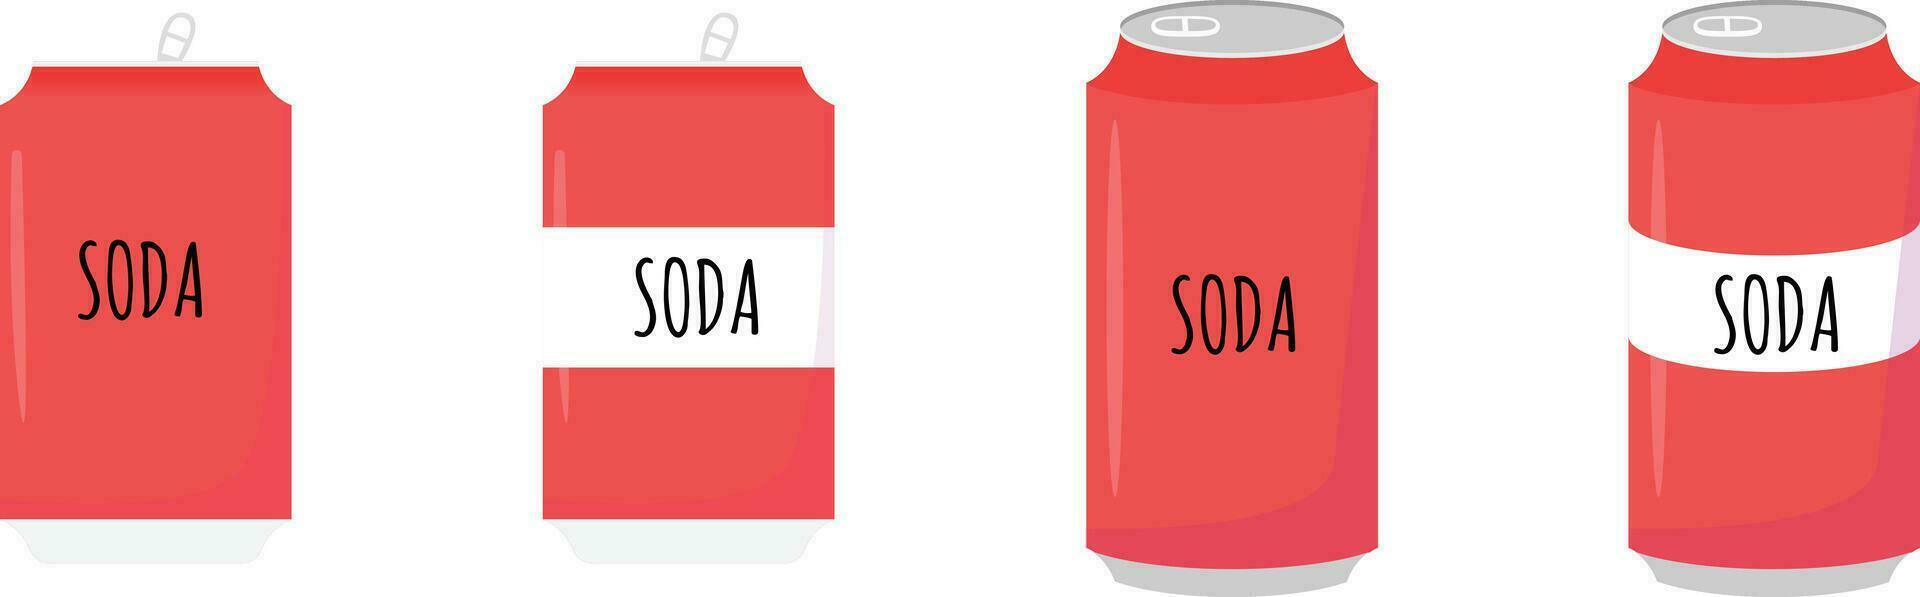 refrigerante Cola pode vermelho cor fresco beber suave beber vetor